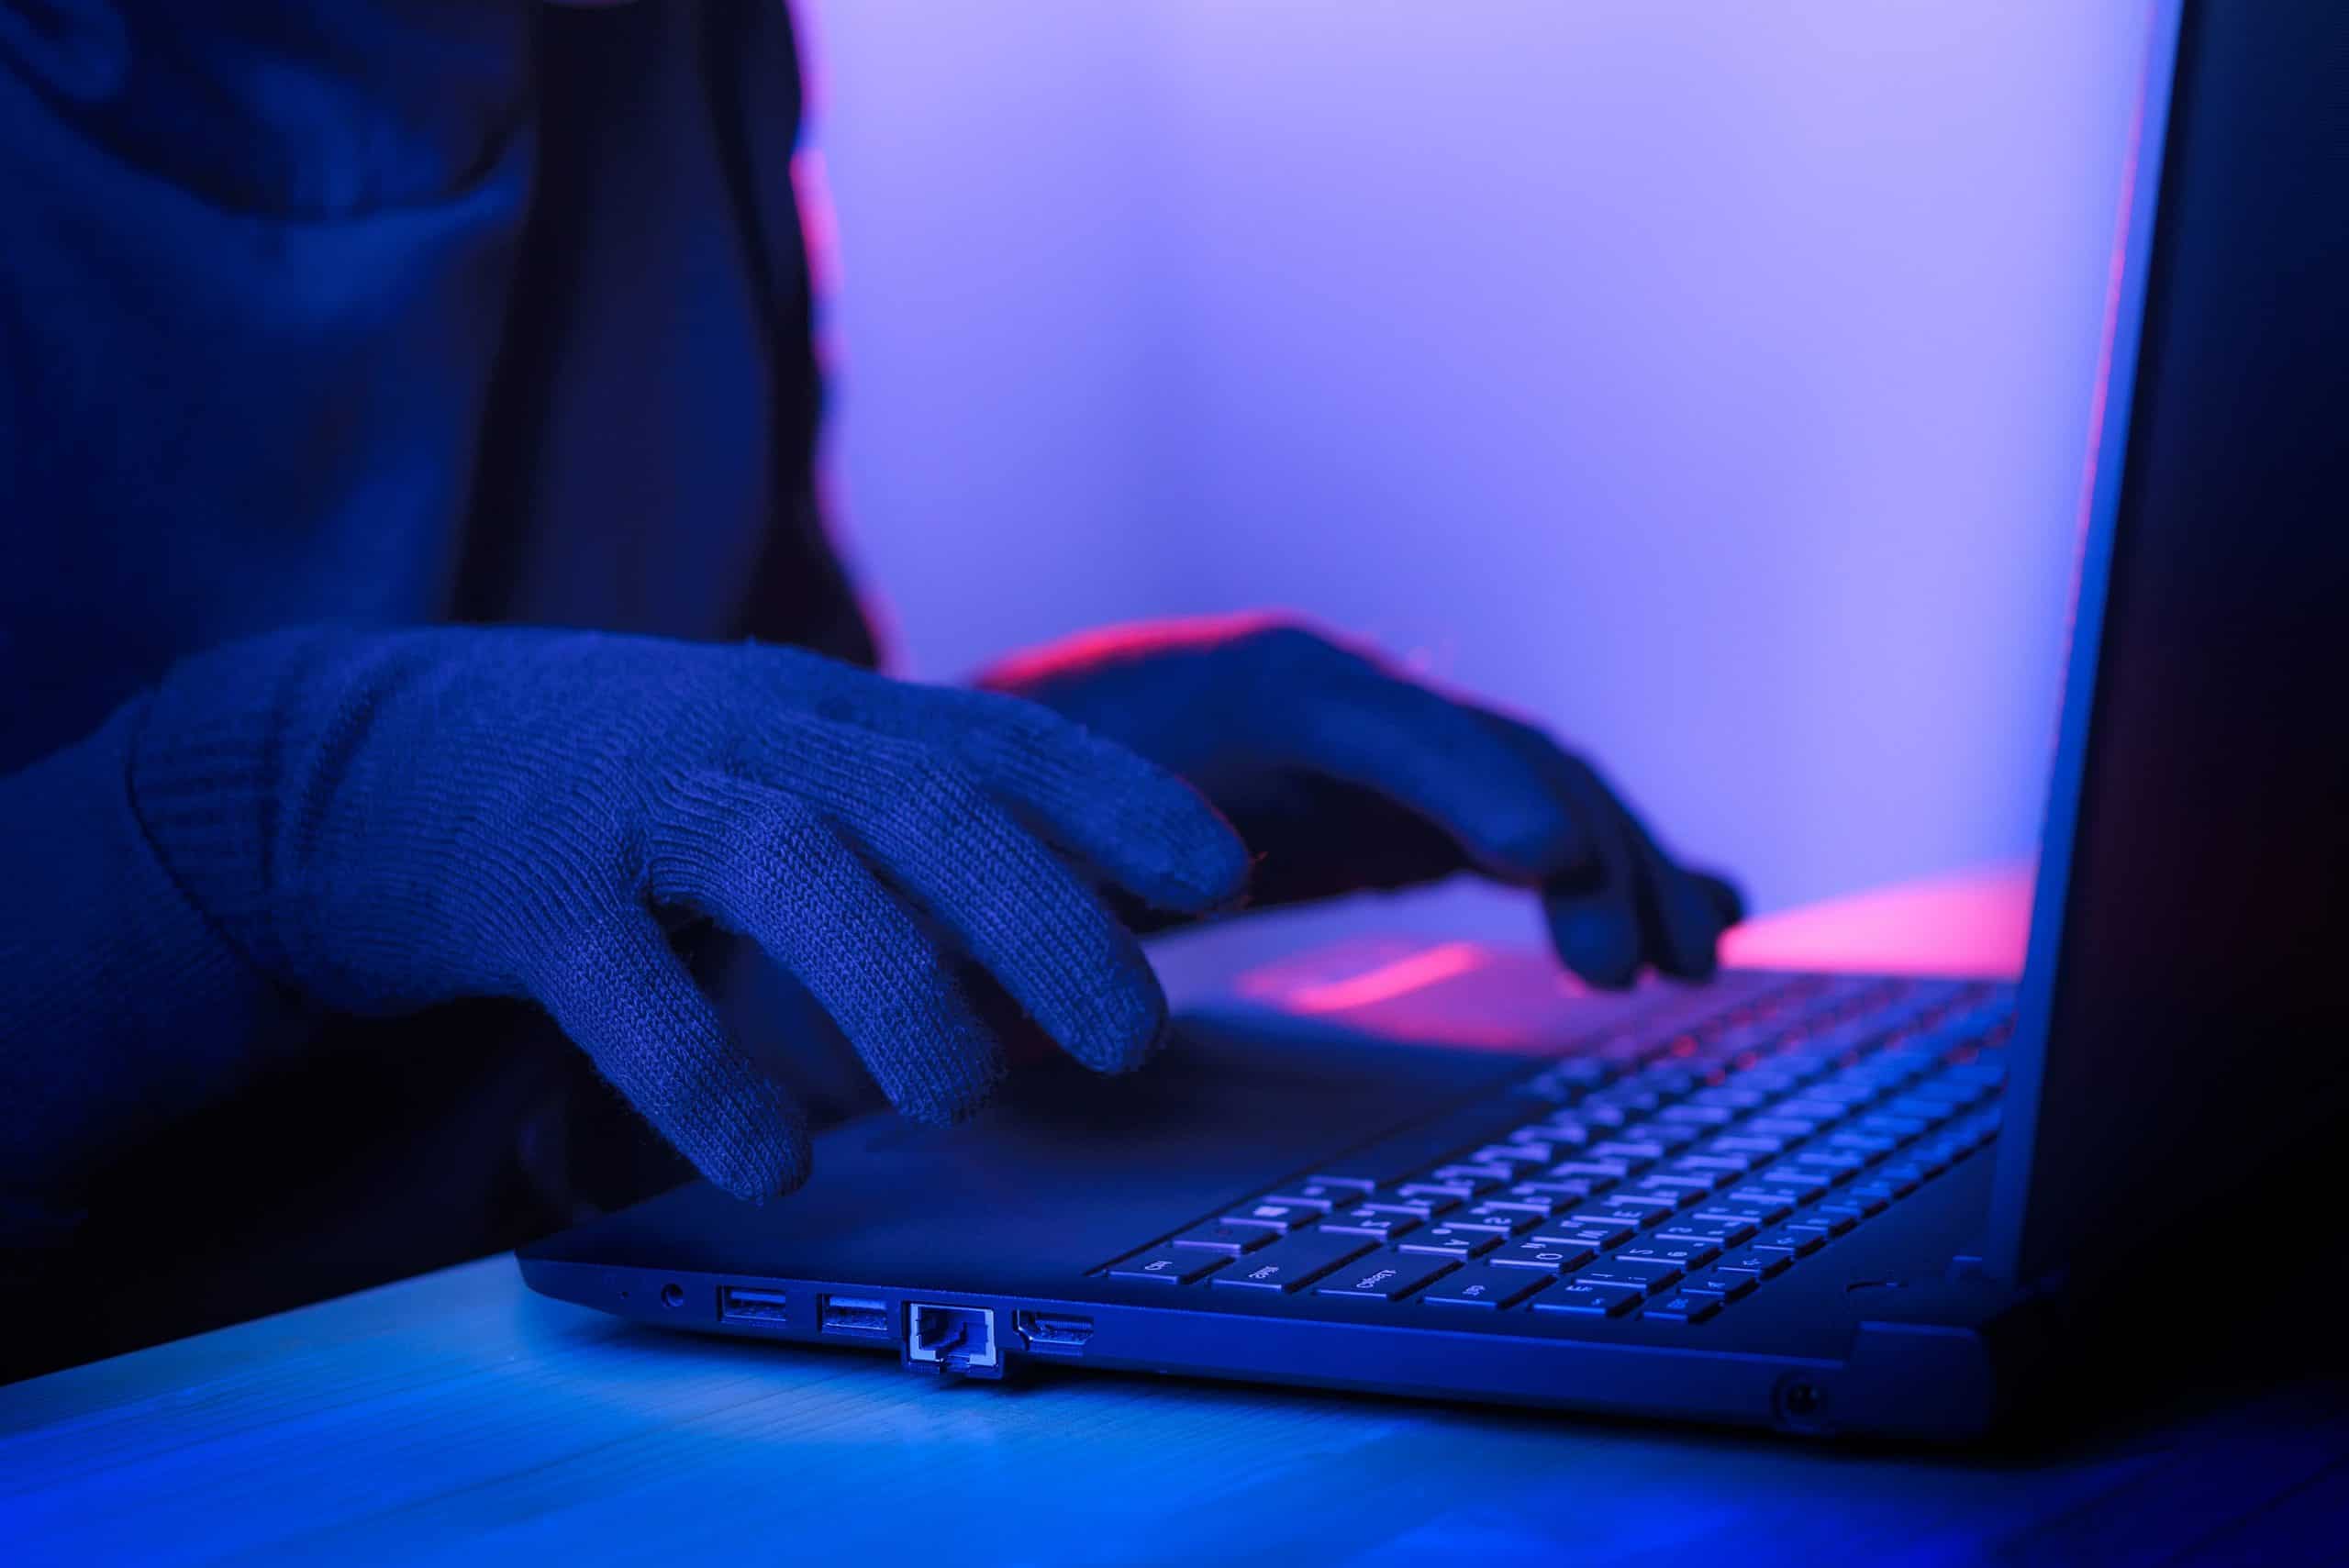 Hacker on laptop